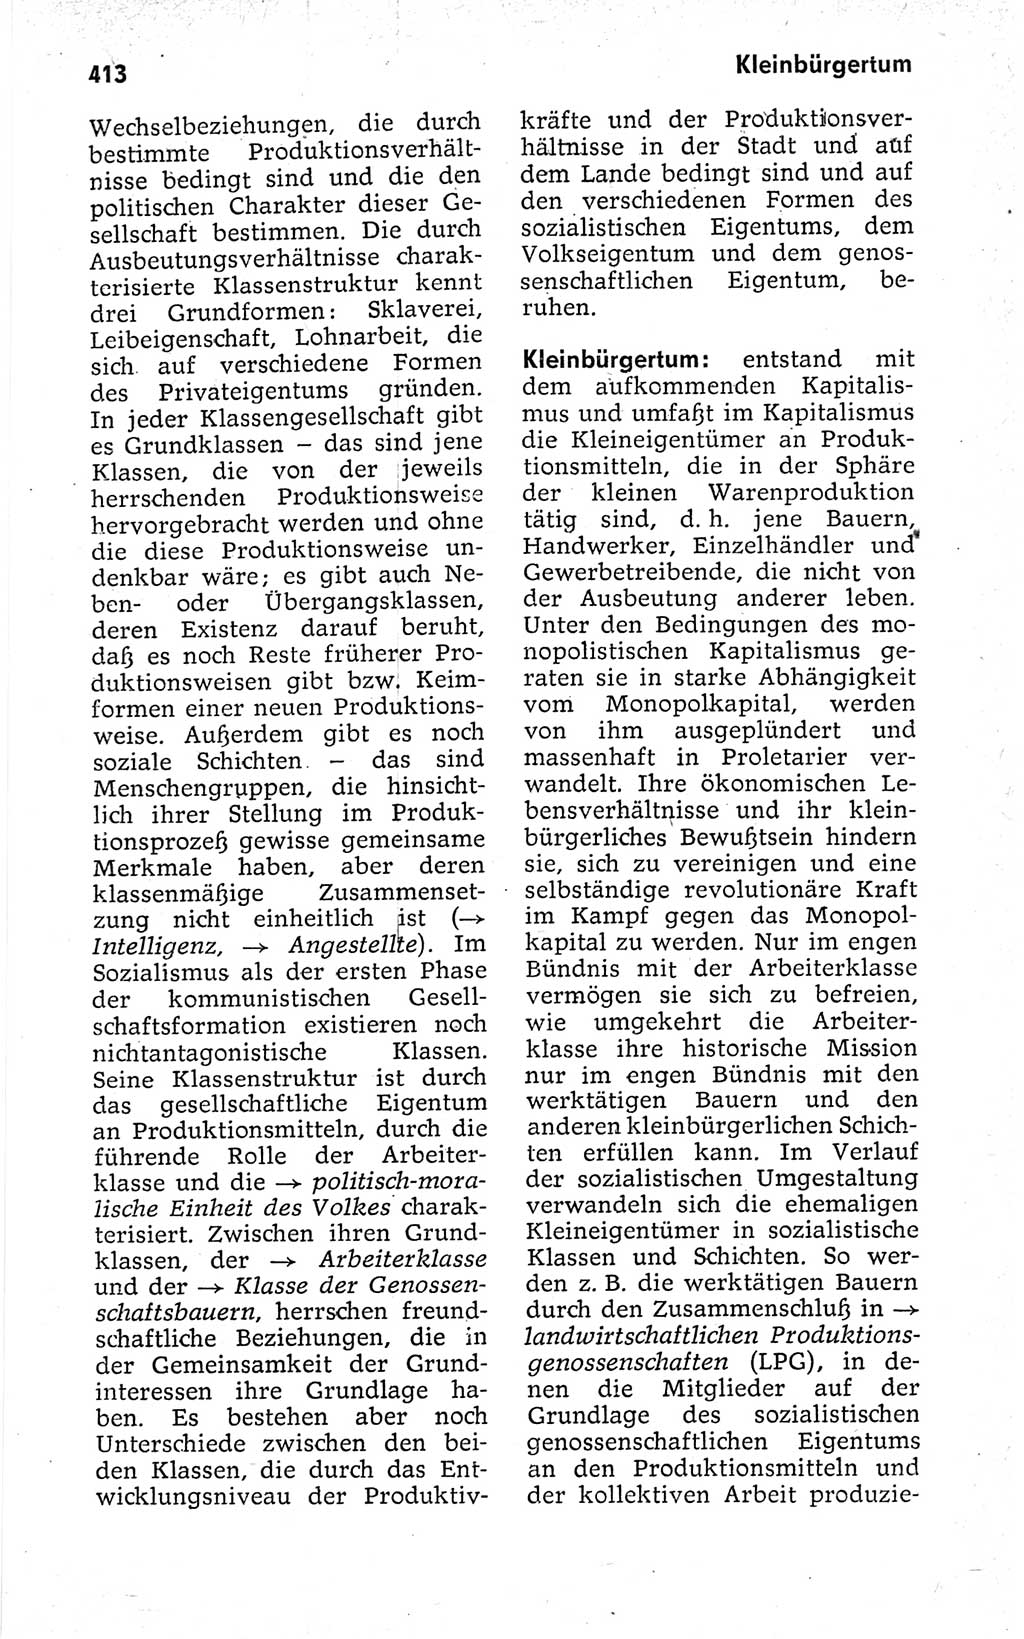 Kleines politisches Wörterbuch [Deutsche Demokratische Republik (DDR)] 1973, Seite 413 (Kl. pol. Wb. DDR 1973, S. 413)